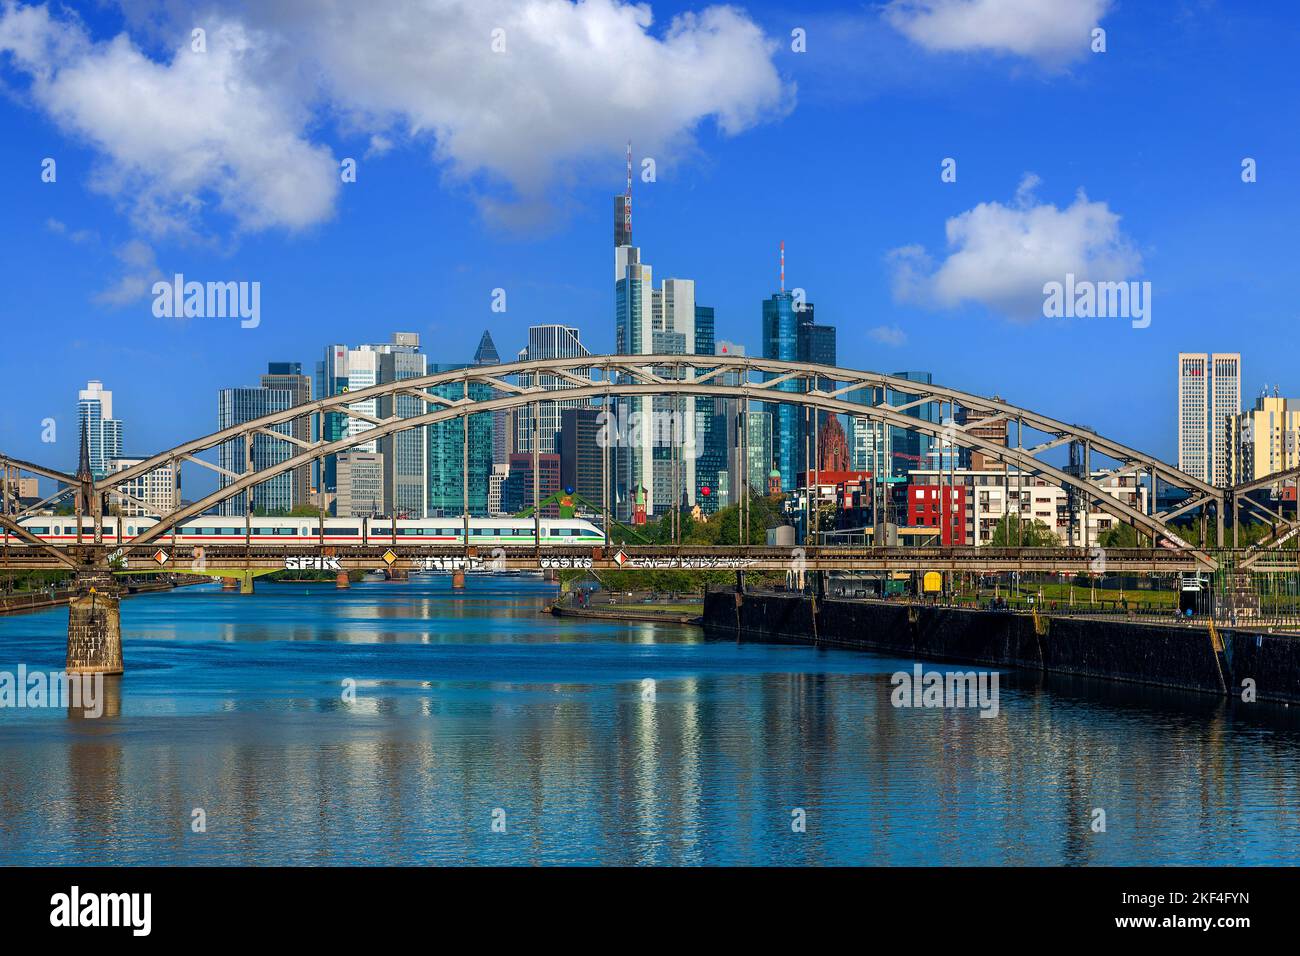 Die Skyline von Frankfurt am Main im Sommer, Deutschherrnbrücke, Eisenbahnbrücke, ICE, Deutsche Bahn, DB, Stock Photo